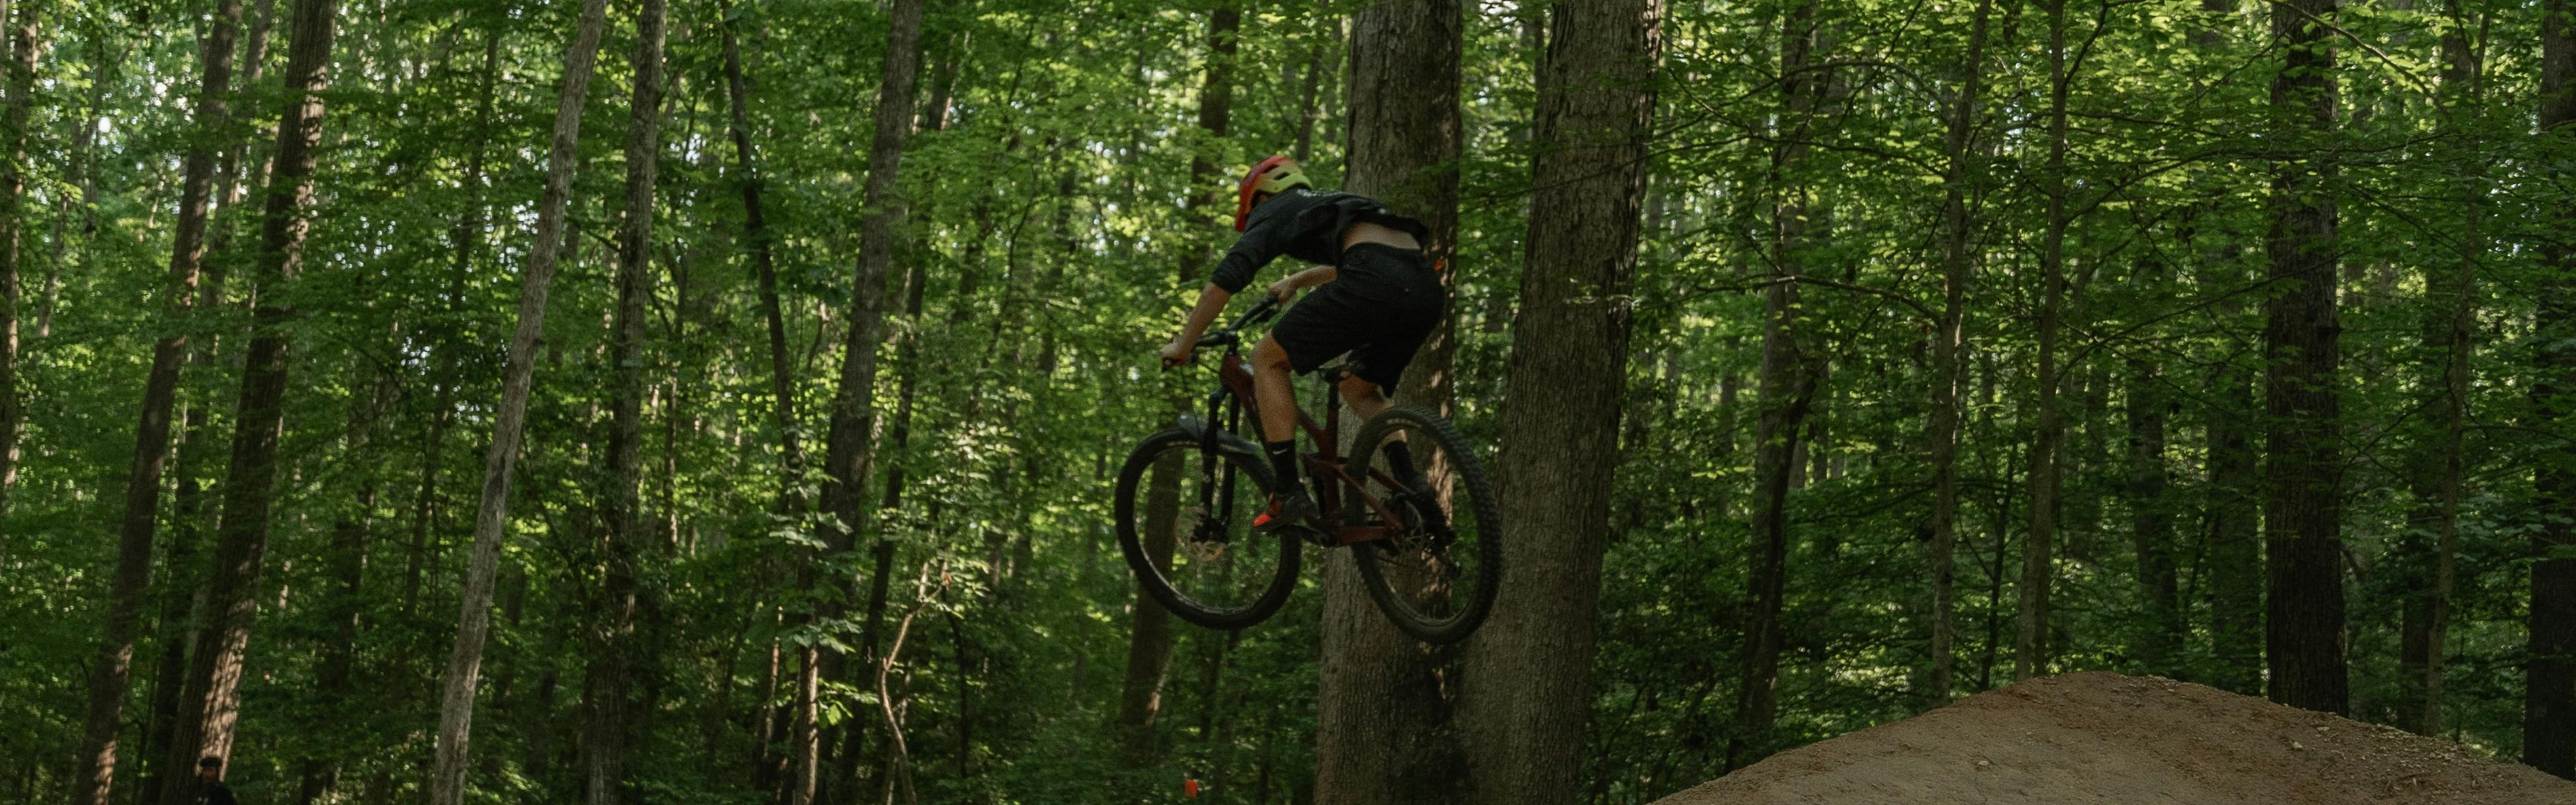 A mountain biker jumps off a dirt jump in a forest.